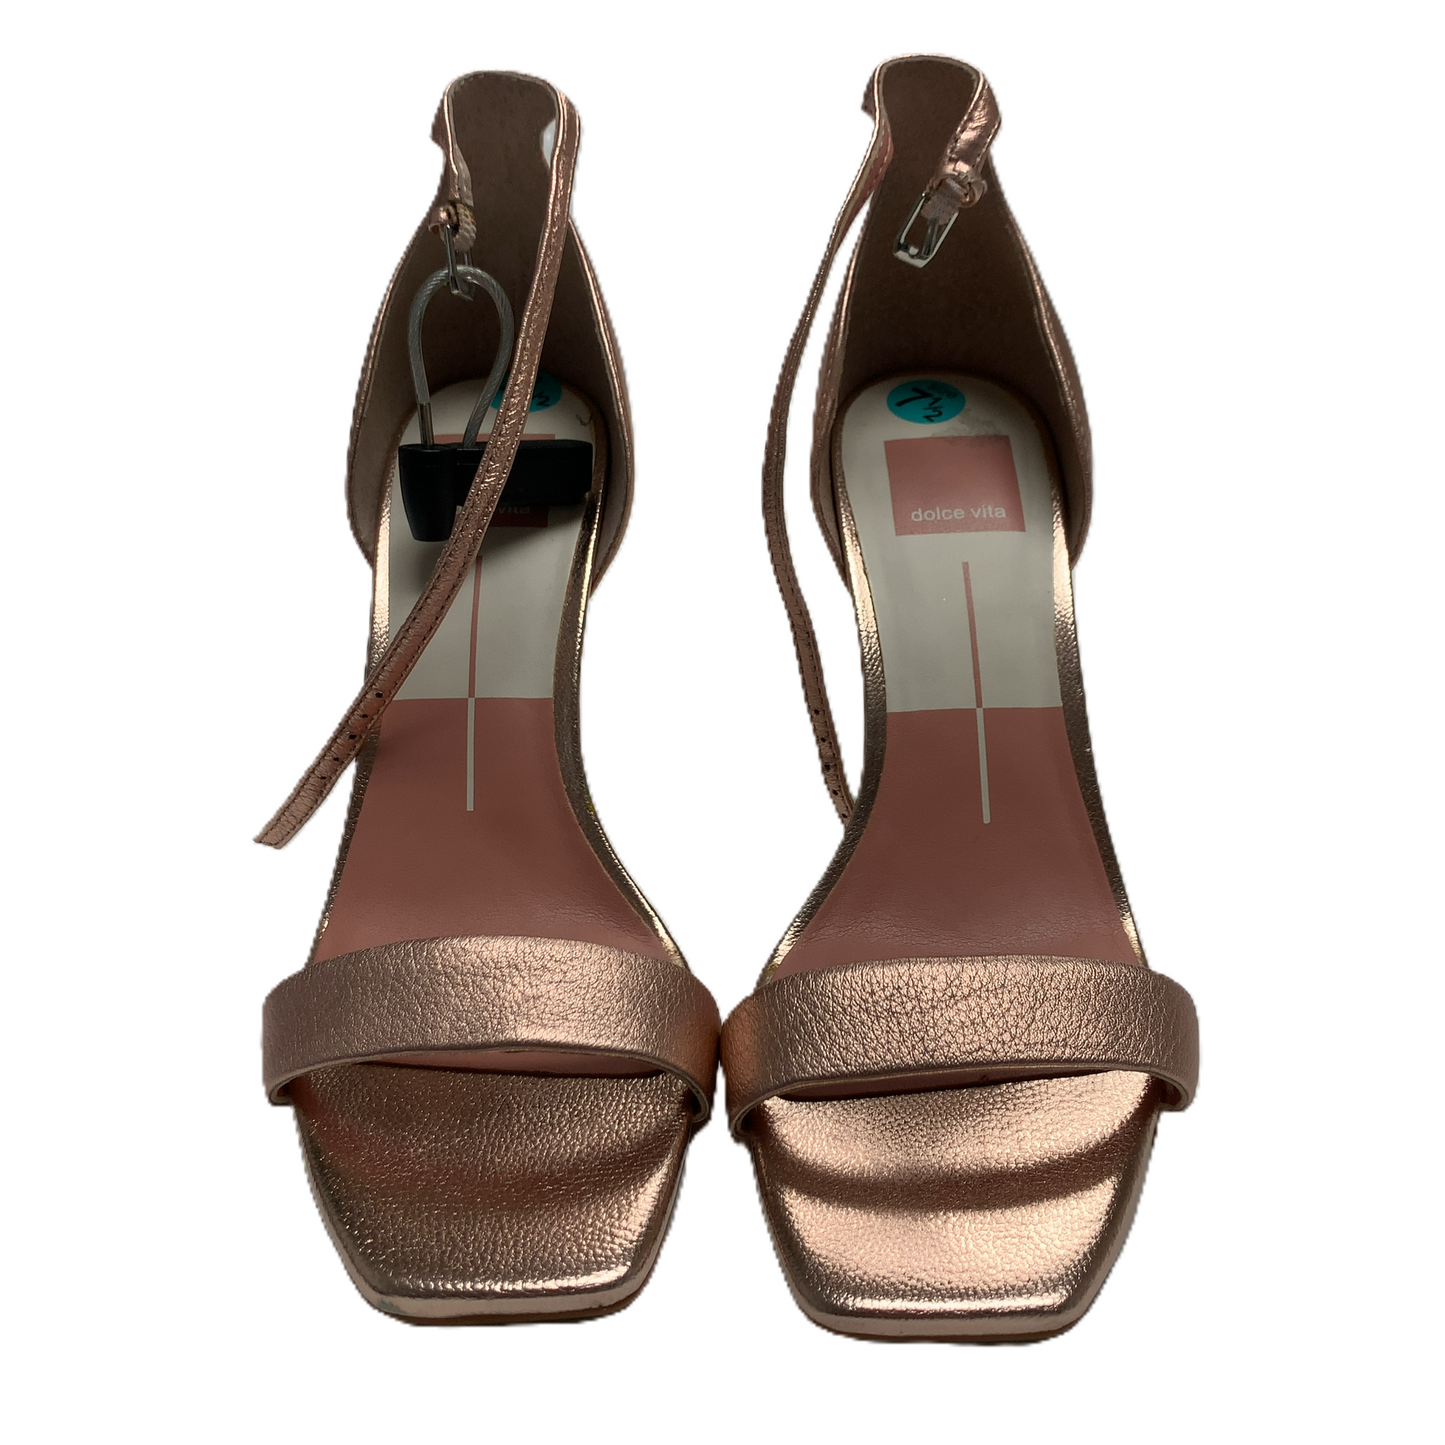 Sandals Heels Stiletto By Dolce Vita  Size: 7.5